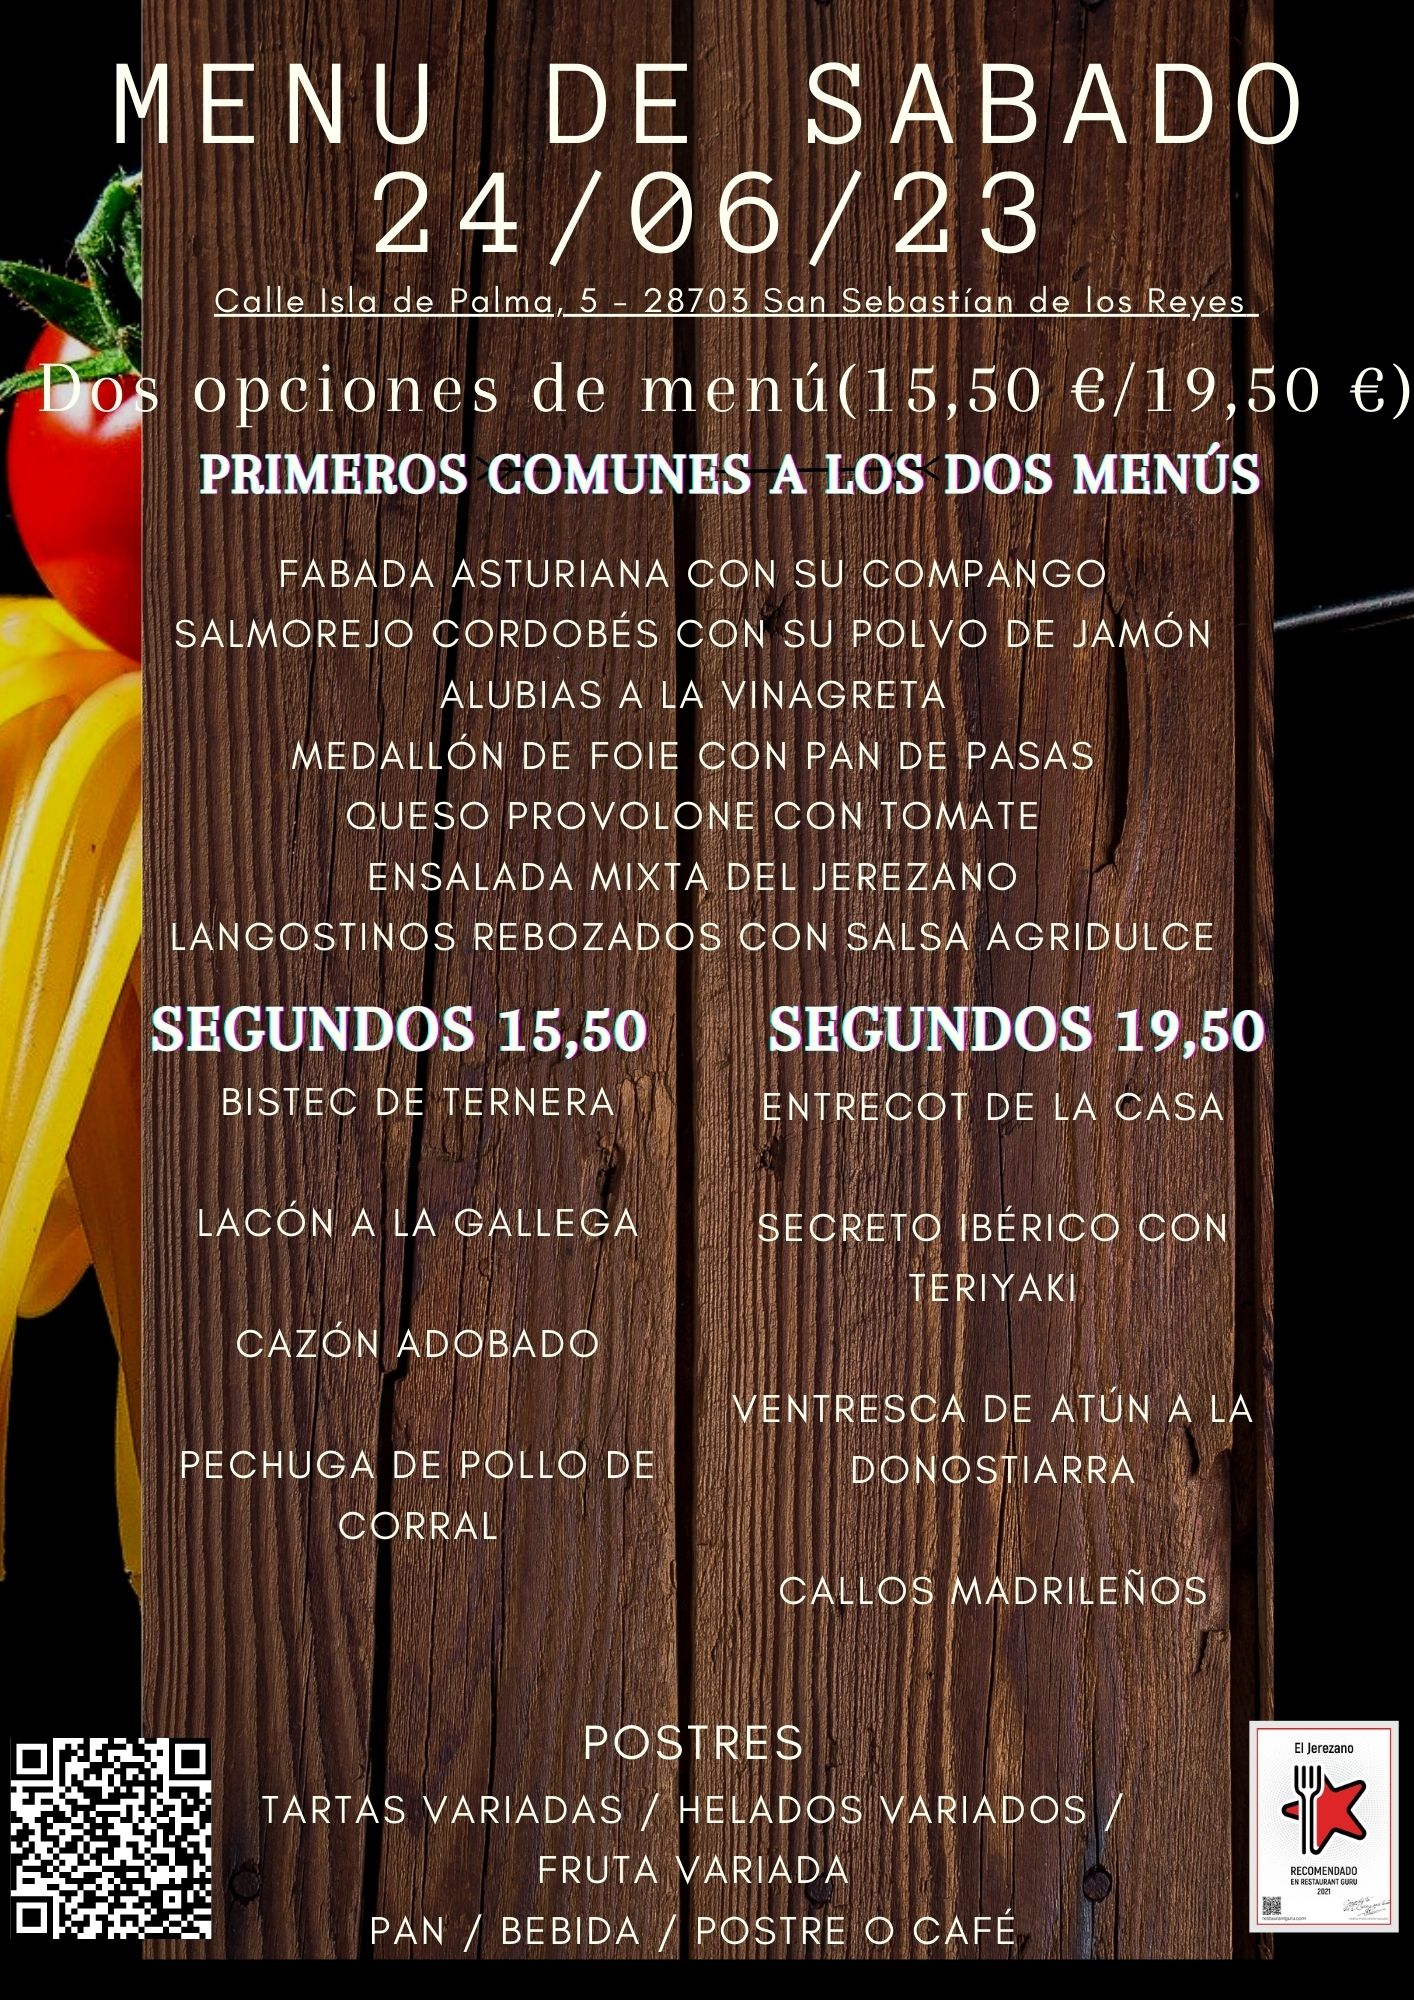 Menús_de_sabado_caseros_del_restaurante_el_jerezano_en_San_sebastian_de_los_reyes